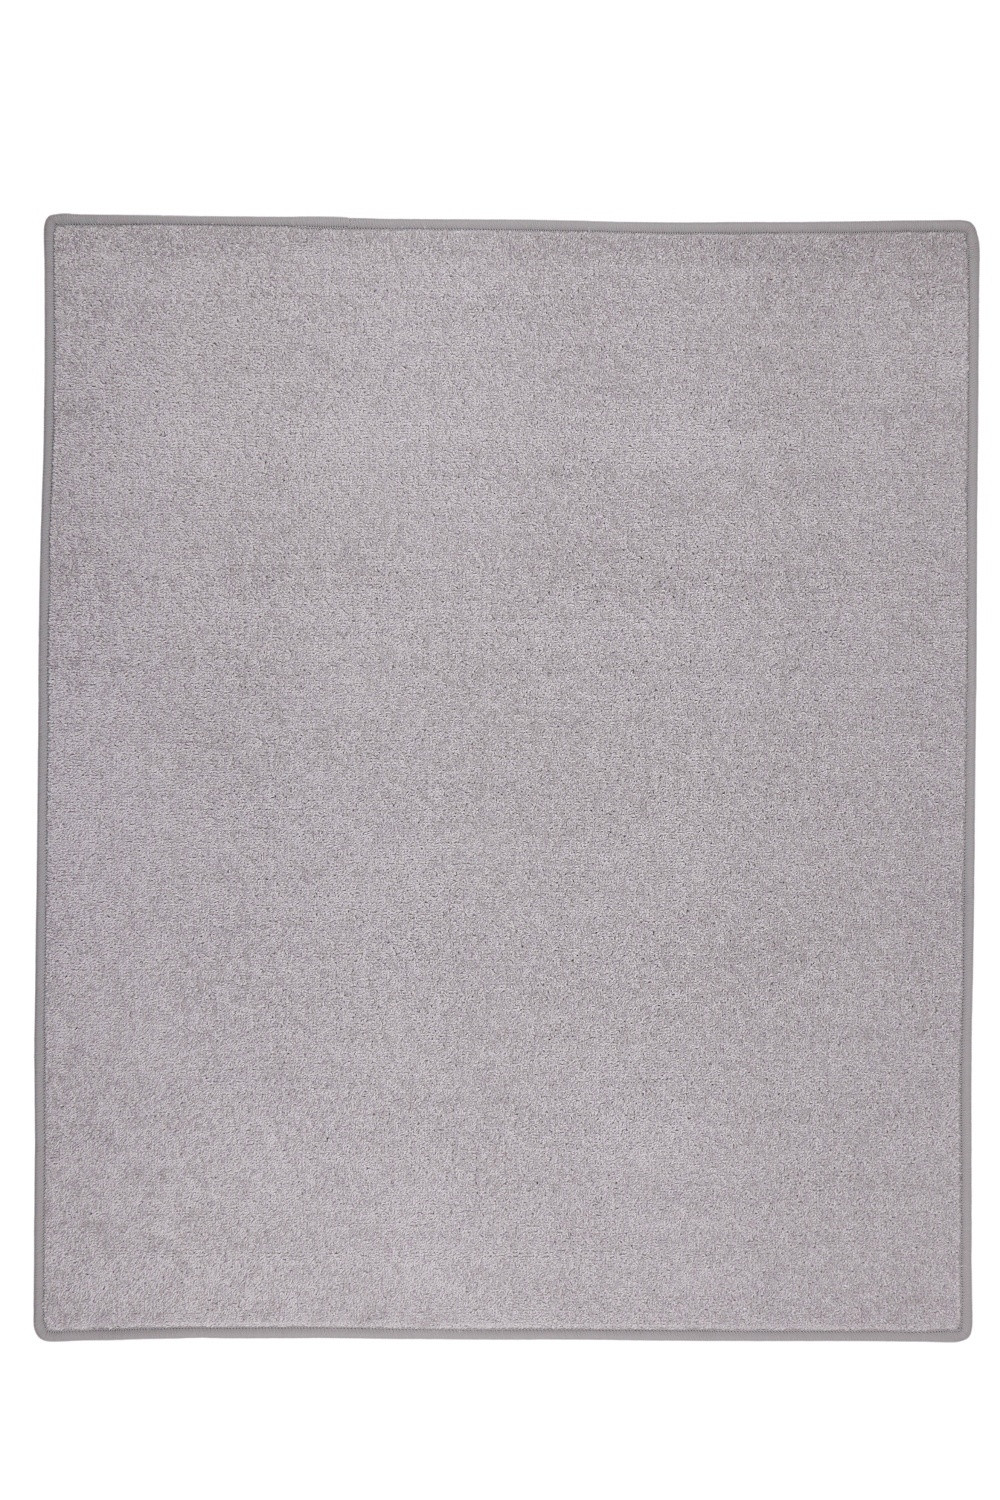 Kusový koberec Eton sivý 73 - 120x170 cm Vopi koberce 